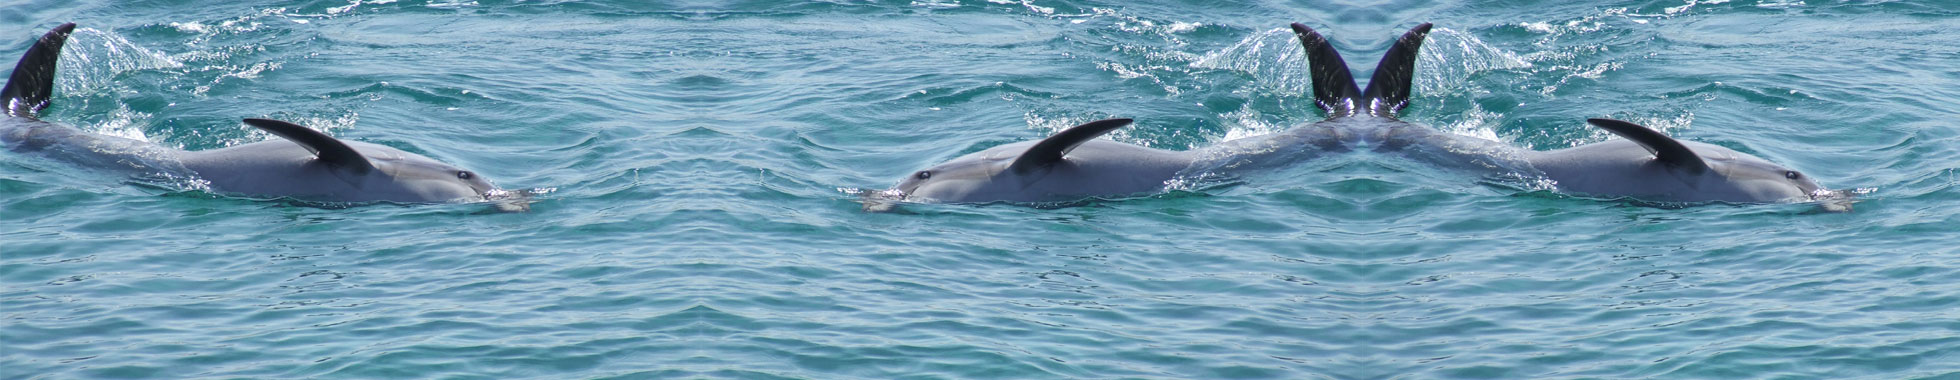 Swim With Dolphins - Eilat